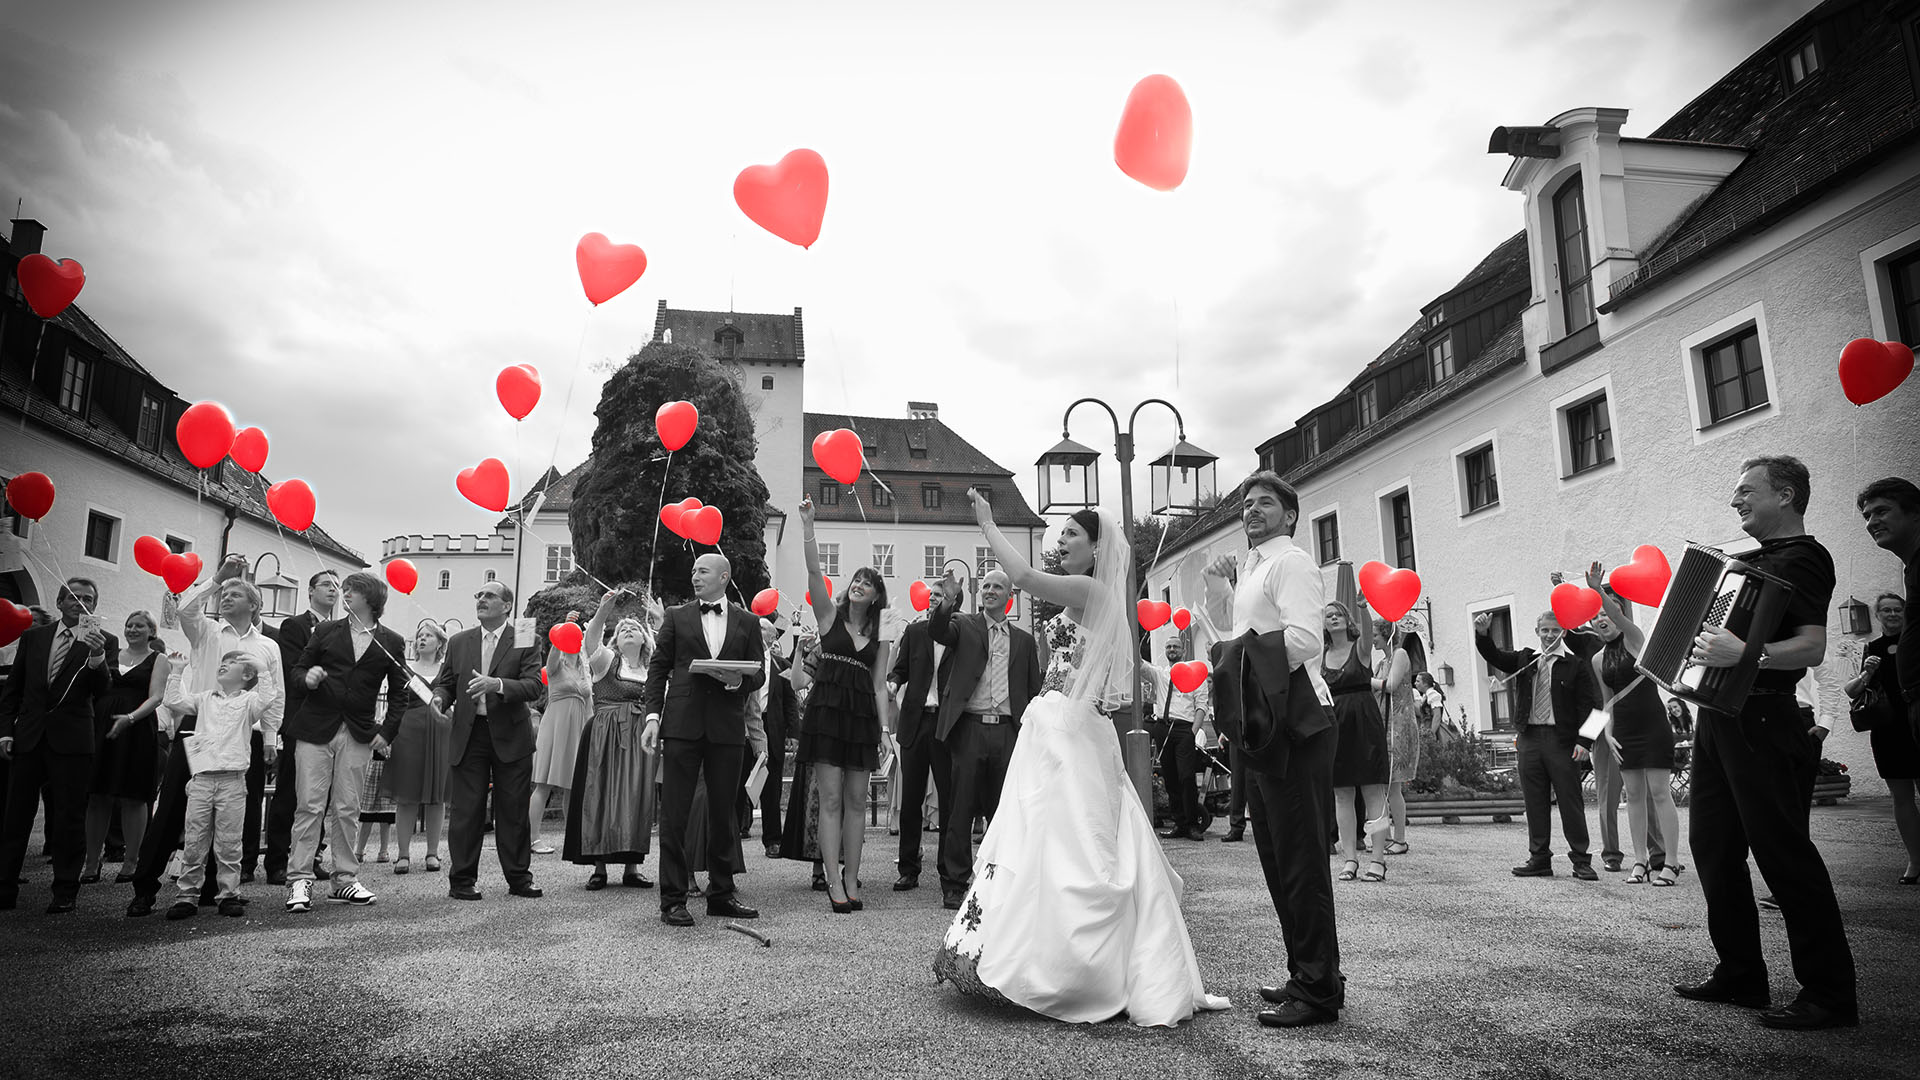 Reportage der Feier Ehepaar und Gäste lassen Luftballons steigen